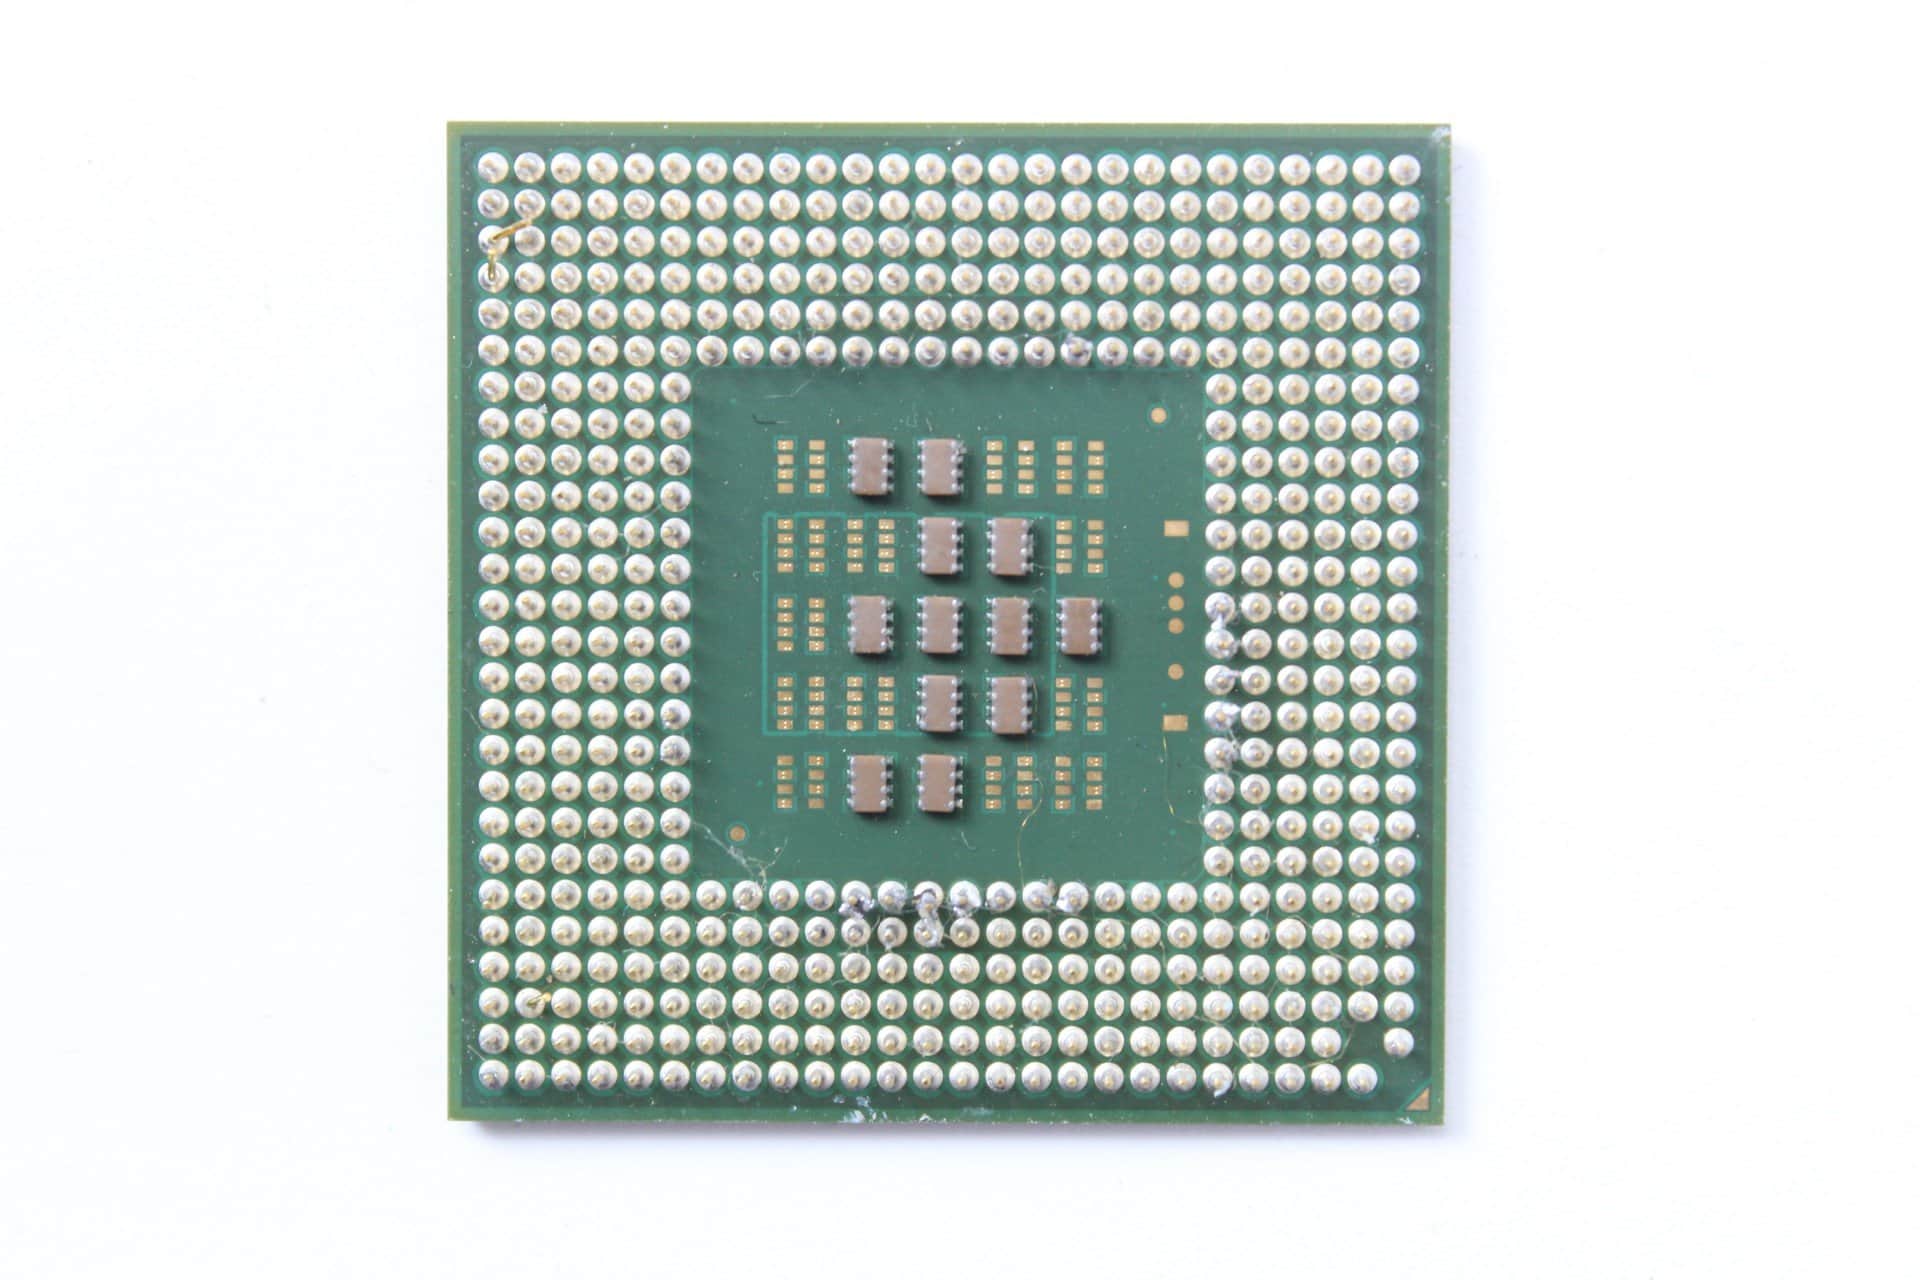 Intel Pentium M 1300MHz